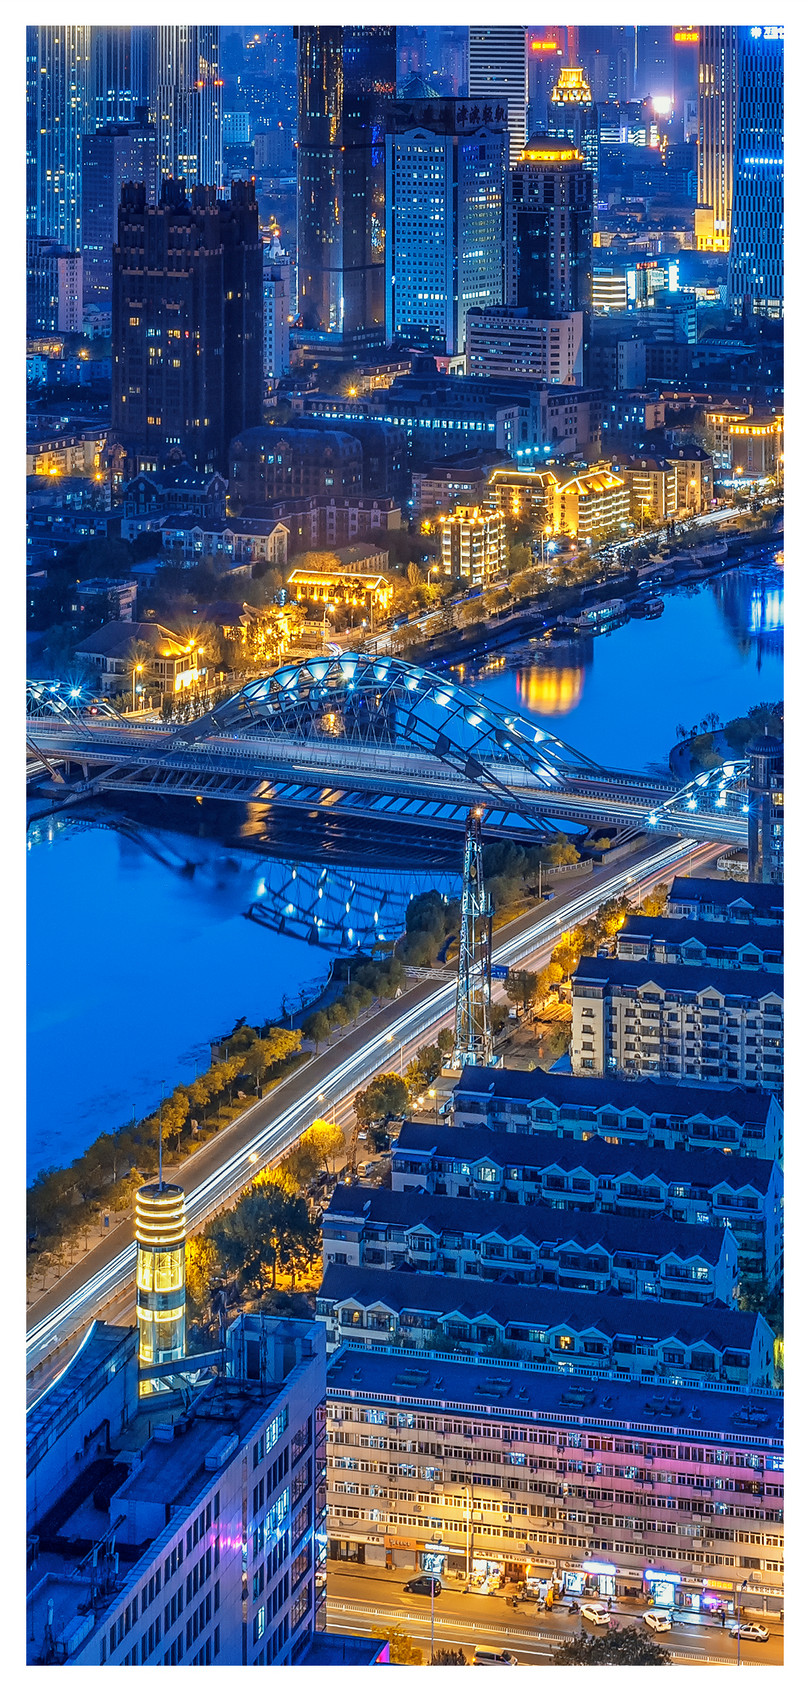 天津夜景手機壁紙圖片素材 Jpg圖片尺寸1125 2436px 高清圖片